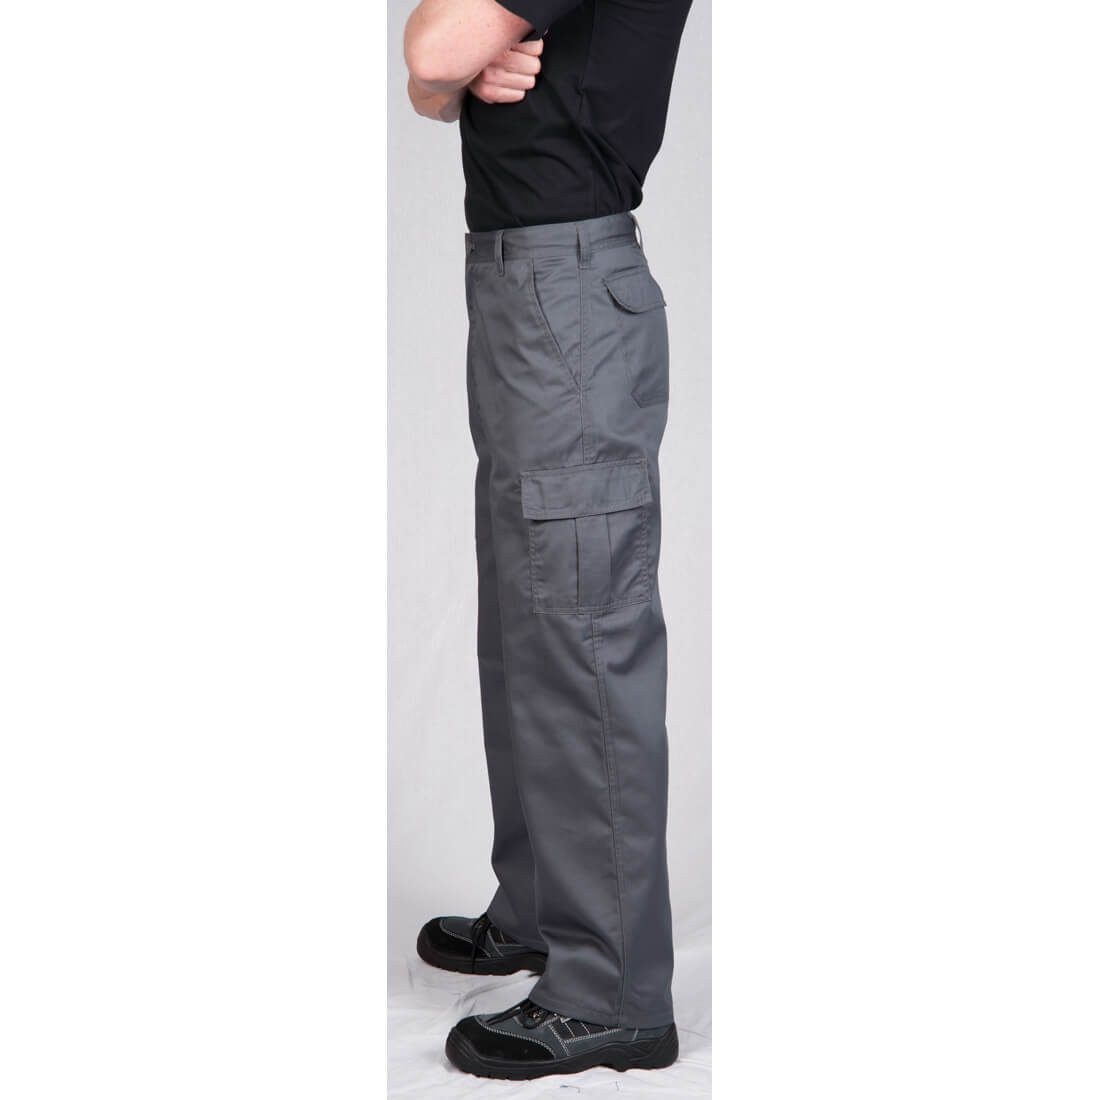 Pantalones Combat - Ropa de protección